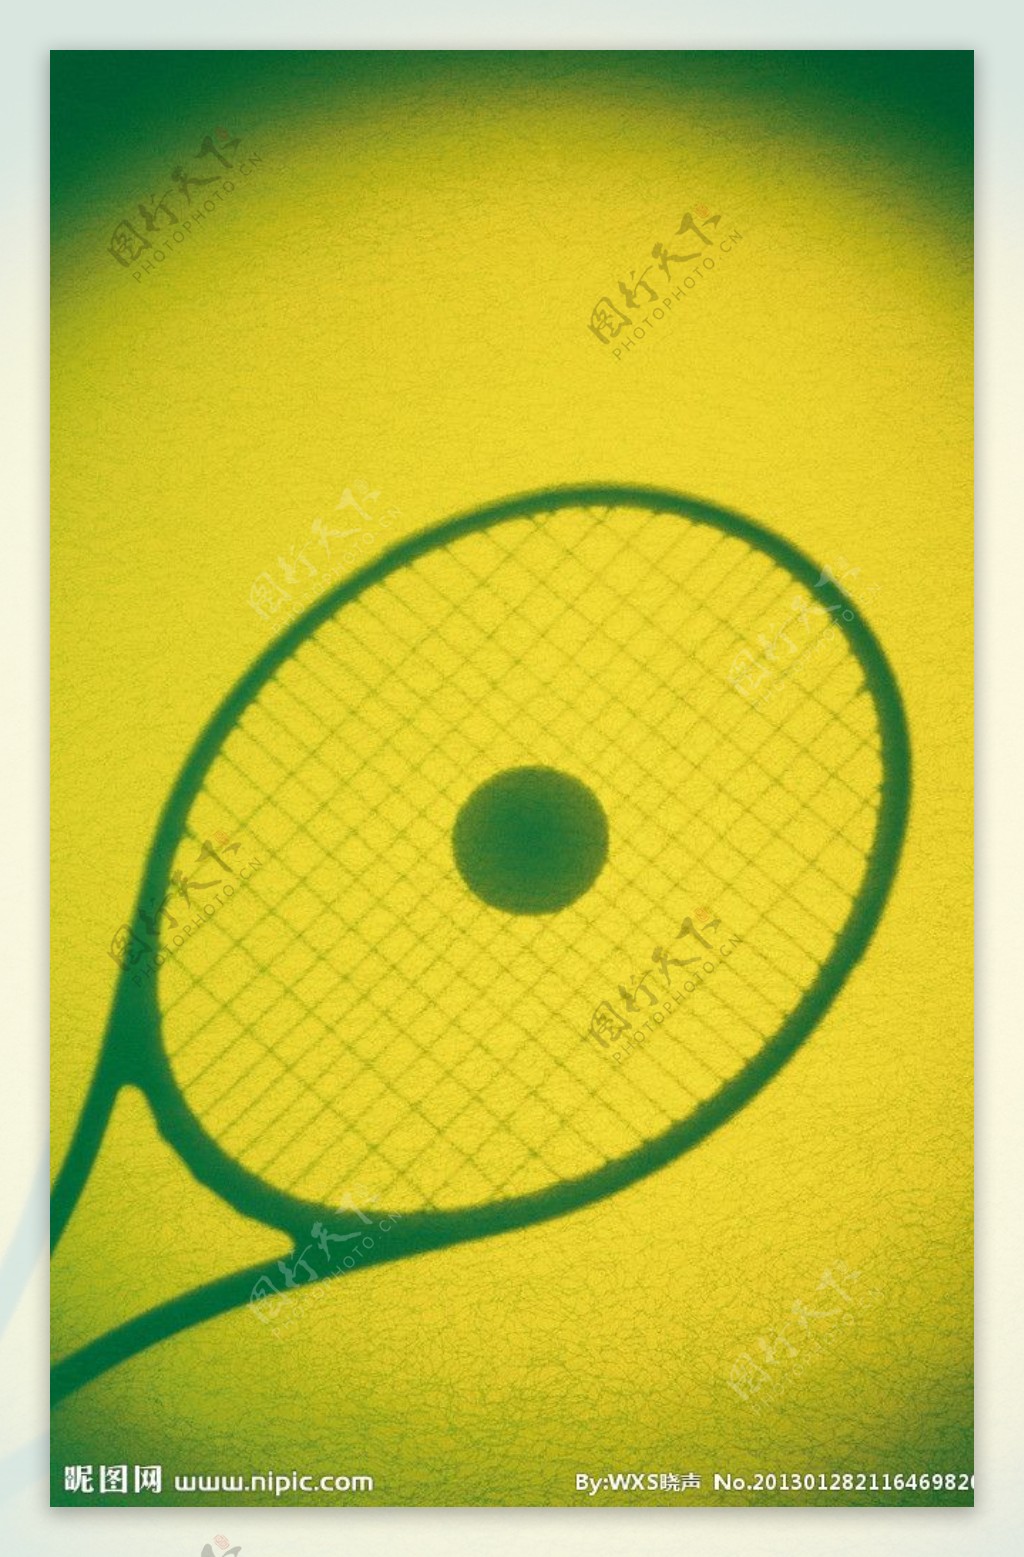 物件光影投射网球图片